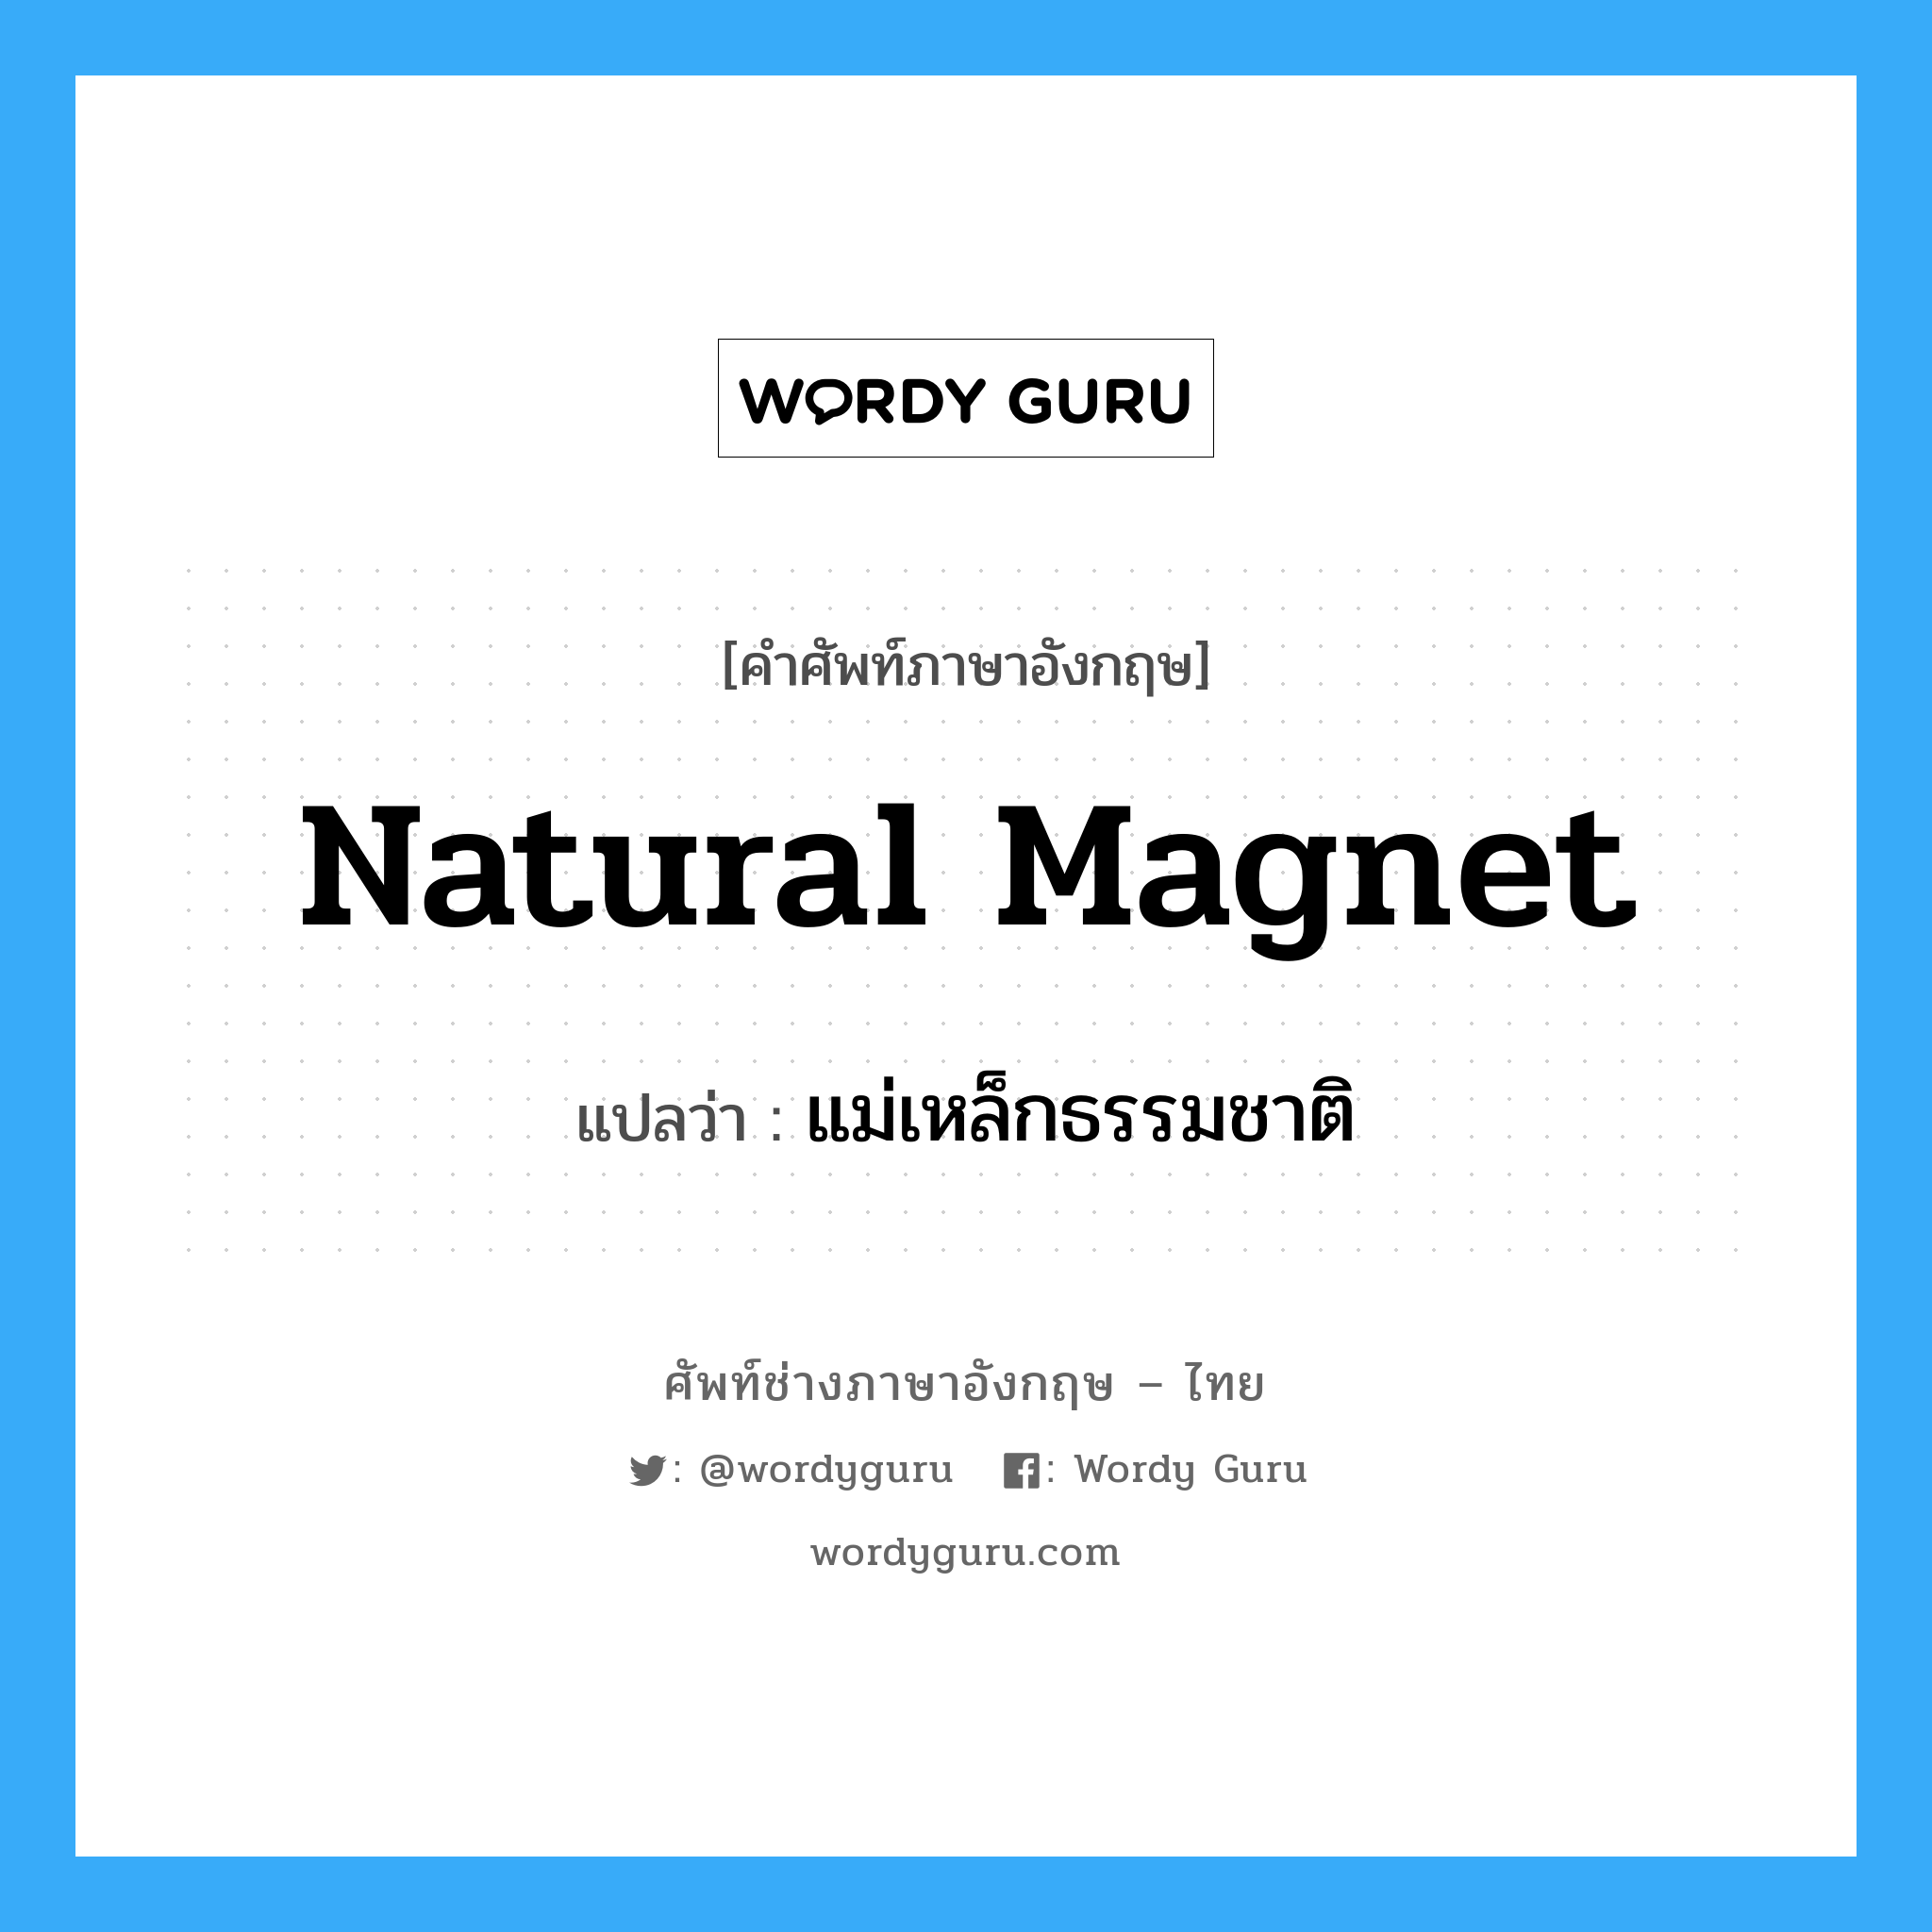 แม่เหล็กธรรมชาติ ภาษาอังกฤษ?, คำศัพท์ช่างภาษาอังกฤษ - ไทย แม่เหล็กธรรมชาติ คำศัพท์ภาษาอังกฤษ แม่เหล็กธรรมชาติ แปลว่า natural magnet